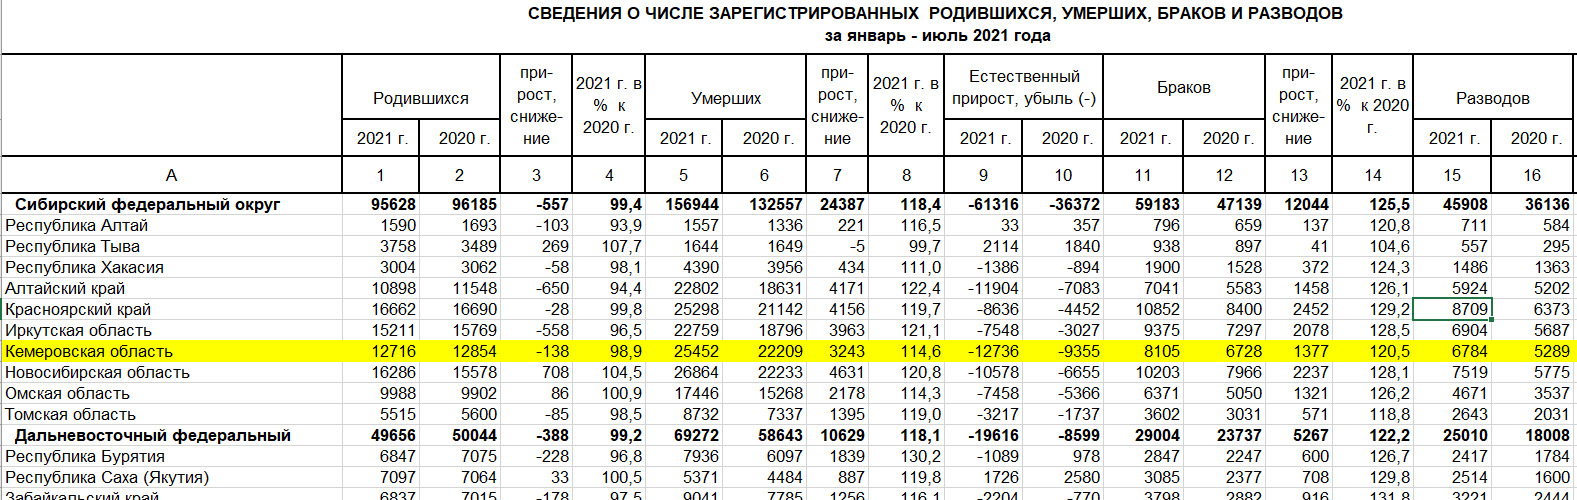 Сколько людей рождается в феврале. Статистика смертности в Кузбассе по годам. Рождаемость в Кузбассе по годам. Рождаемость в Кузбассе по годам статистика. Статистика рождаемости и смертности в Кузбассе.